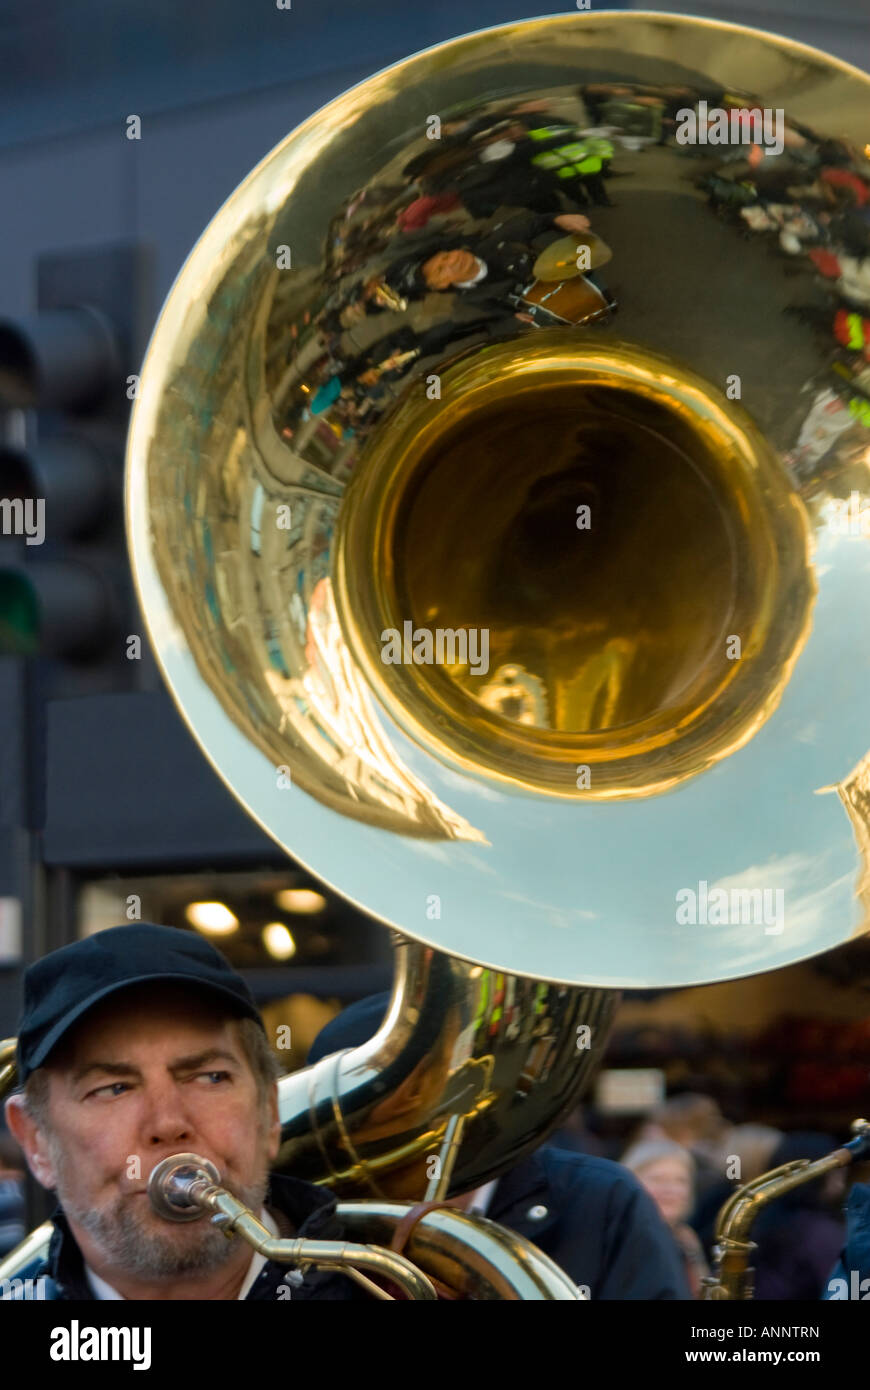 Vertikale Nahaufnahme der Glocke von einer riesigen Sousaphon aka marching Tuba, gespielt von einem Mann in einer marching Brass Band. Stockfoto